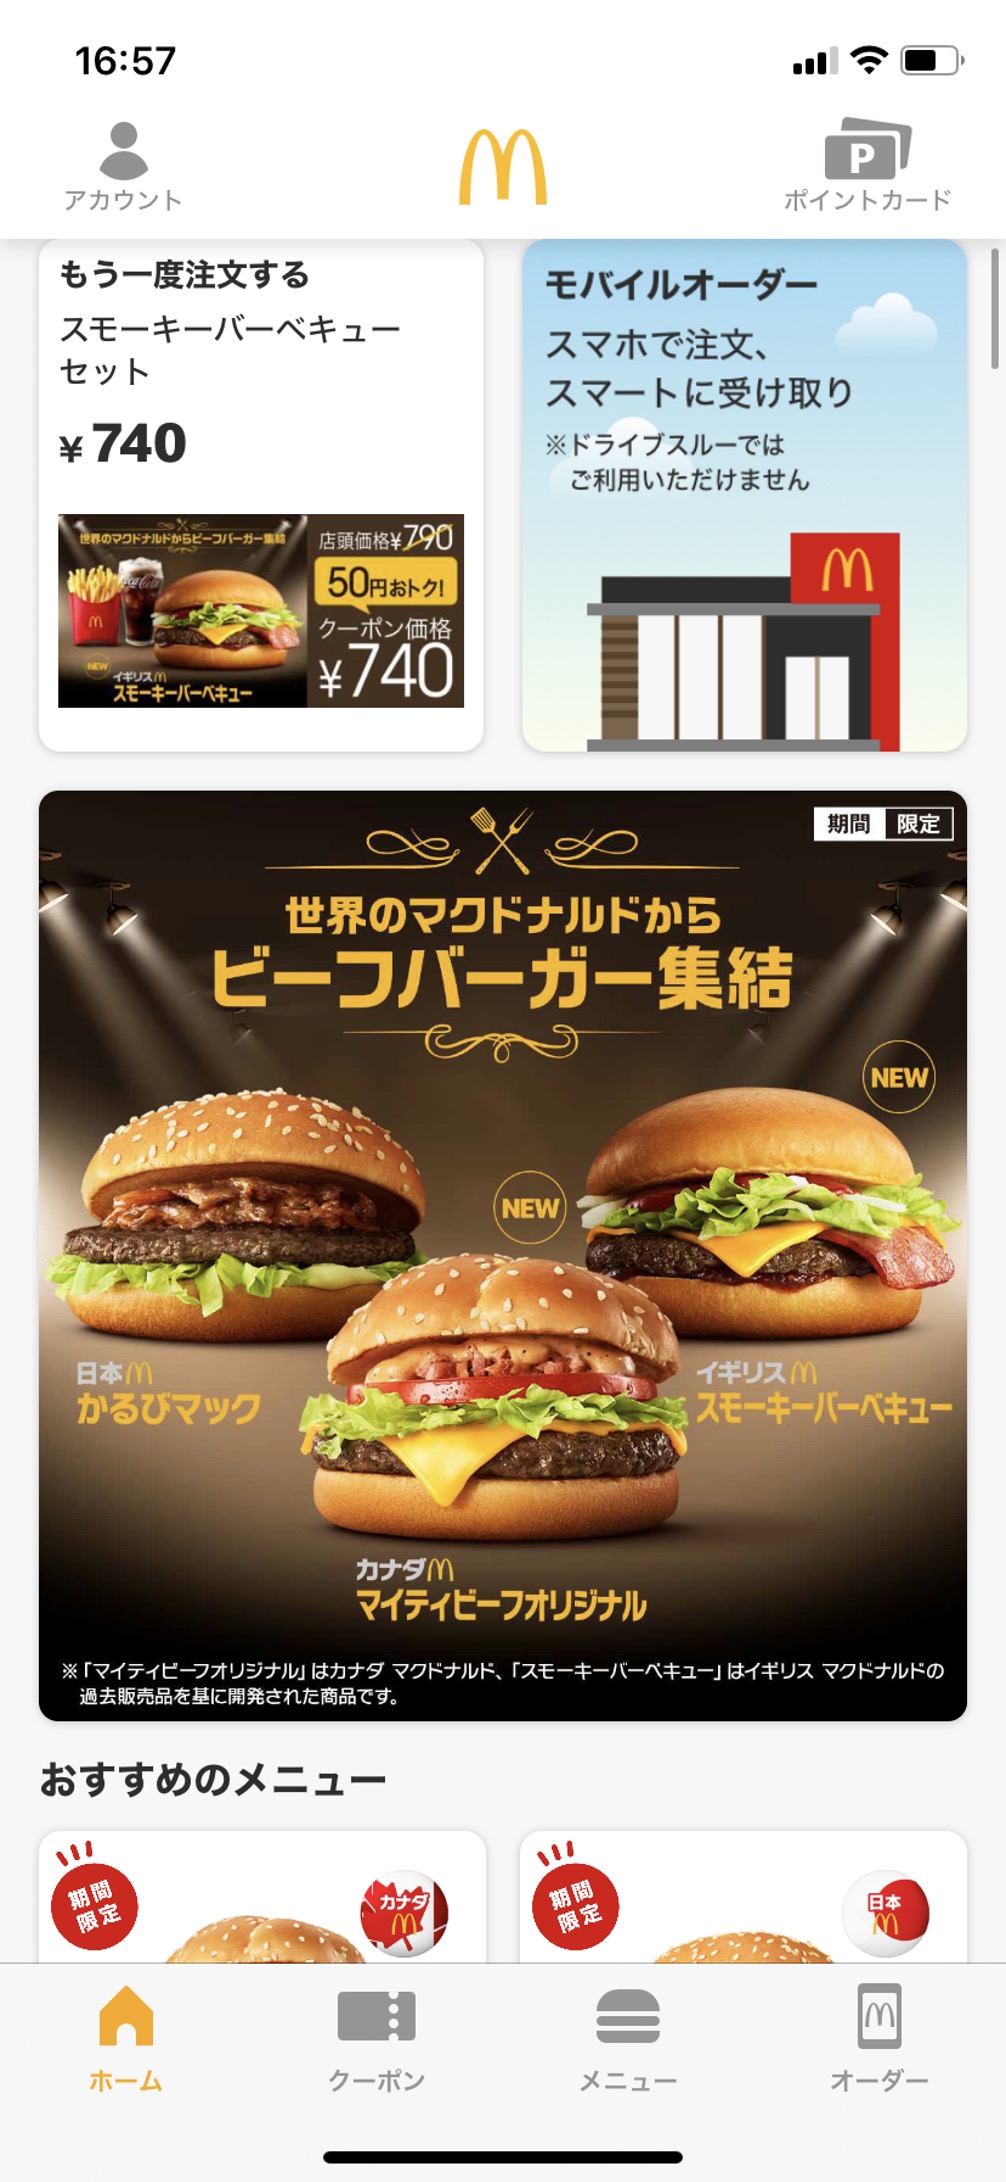 利用者を急激に増やしているファストフード公式アプリの使い勝手を徹底比較 日本食糧新聞電子版